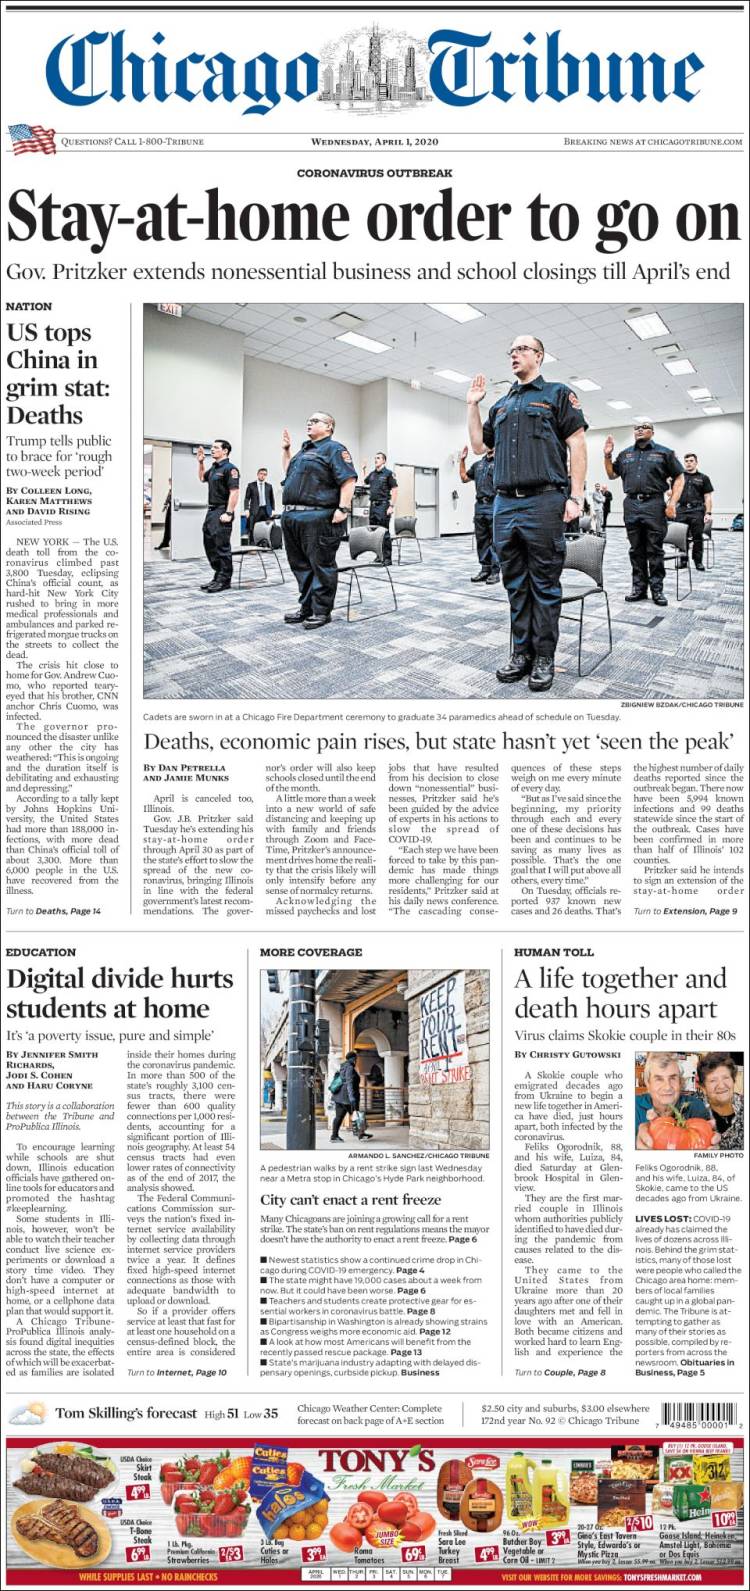 صفحه اول روزنامه شیکاگو تریبون/ ایالات متحده در آمار دلخراش مرگ بالای چین قرار گرفت